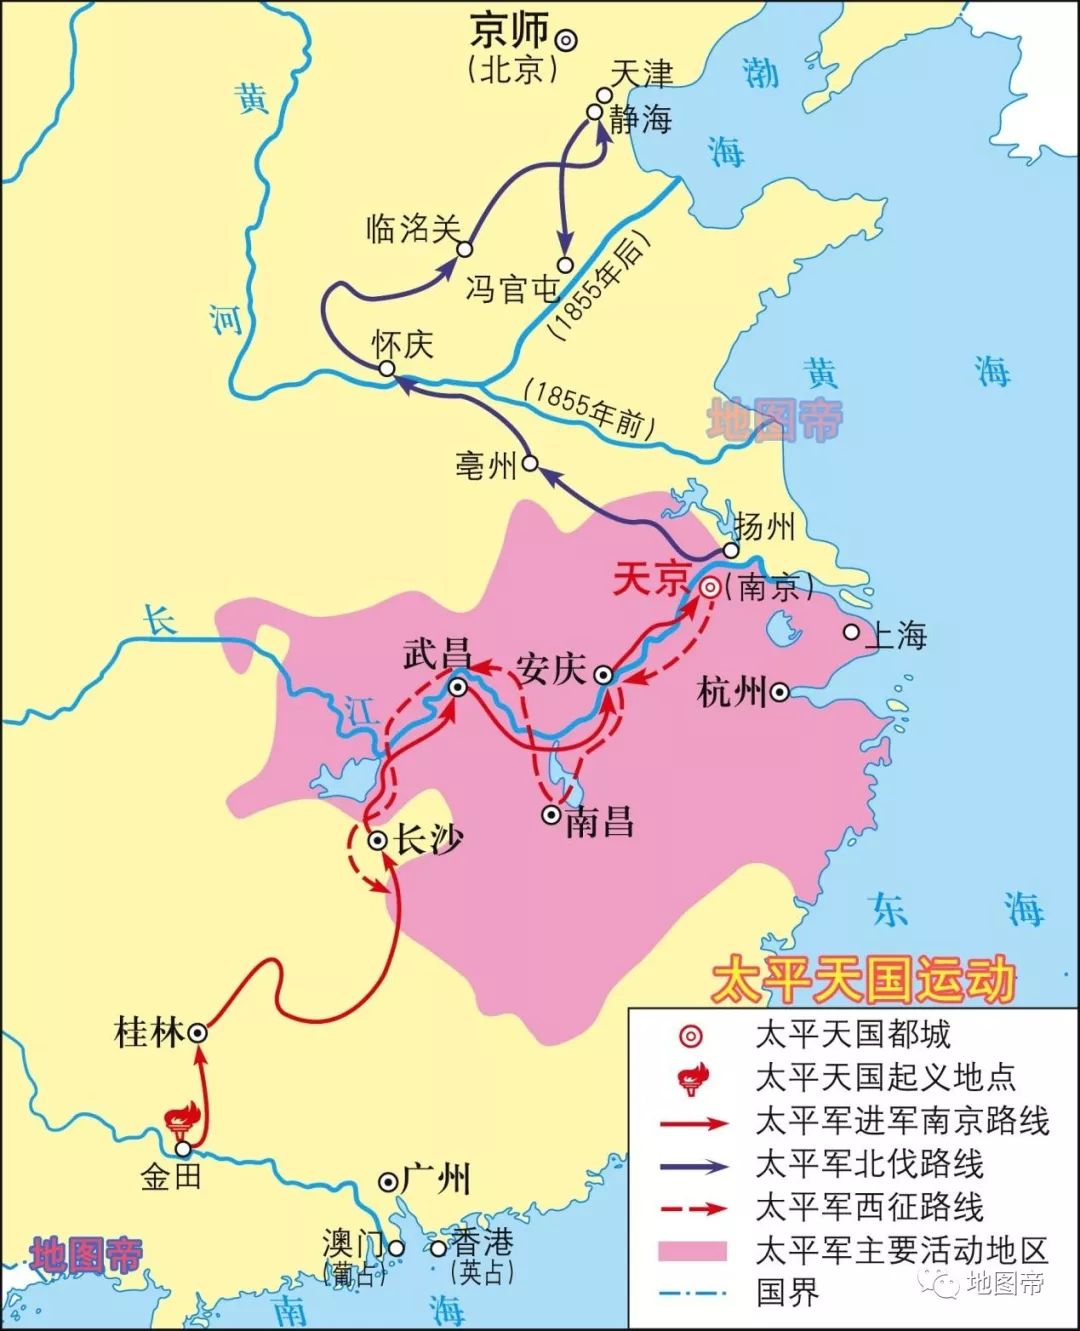 武汉,历史上为兵家必争之地,地理位置有多重要?